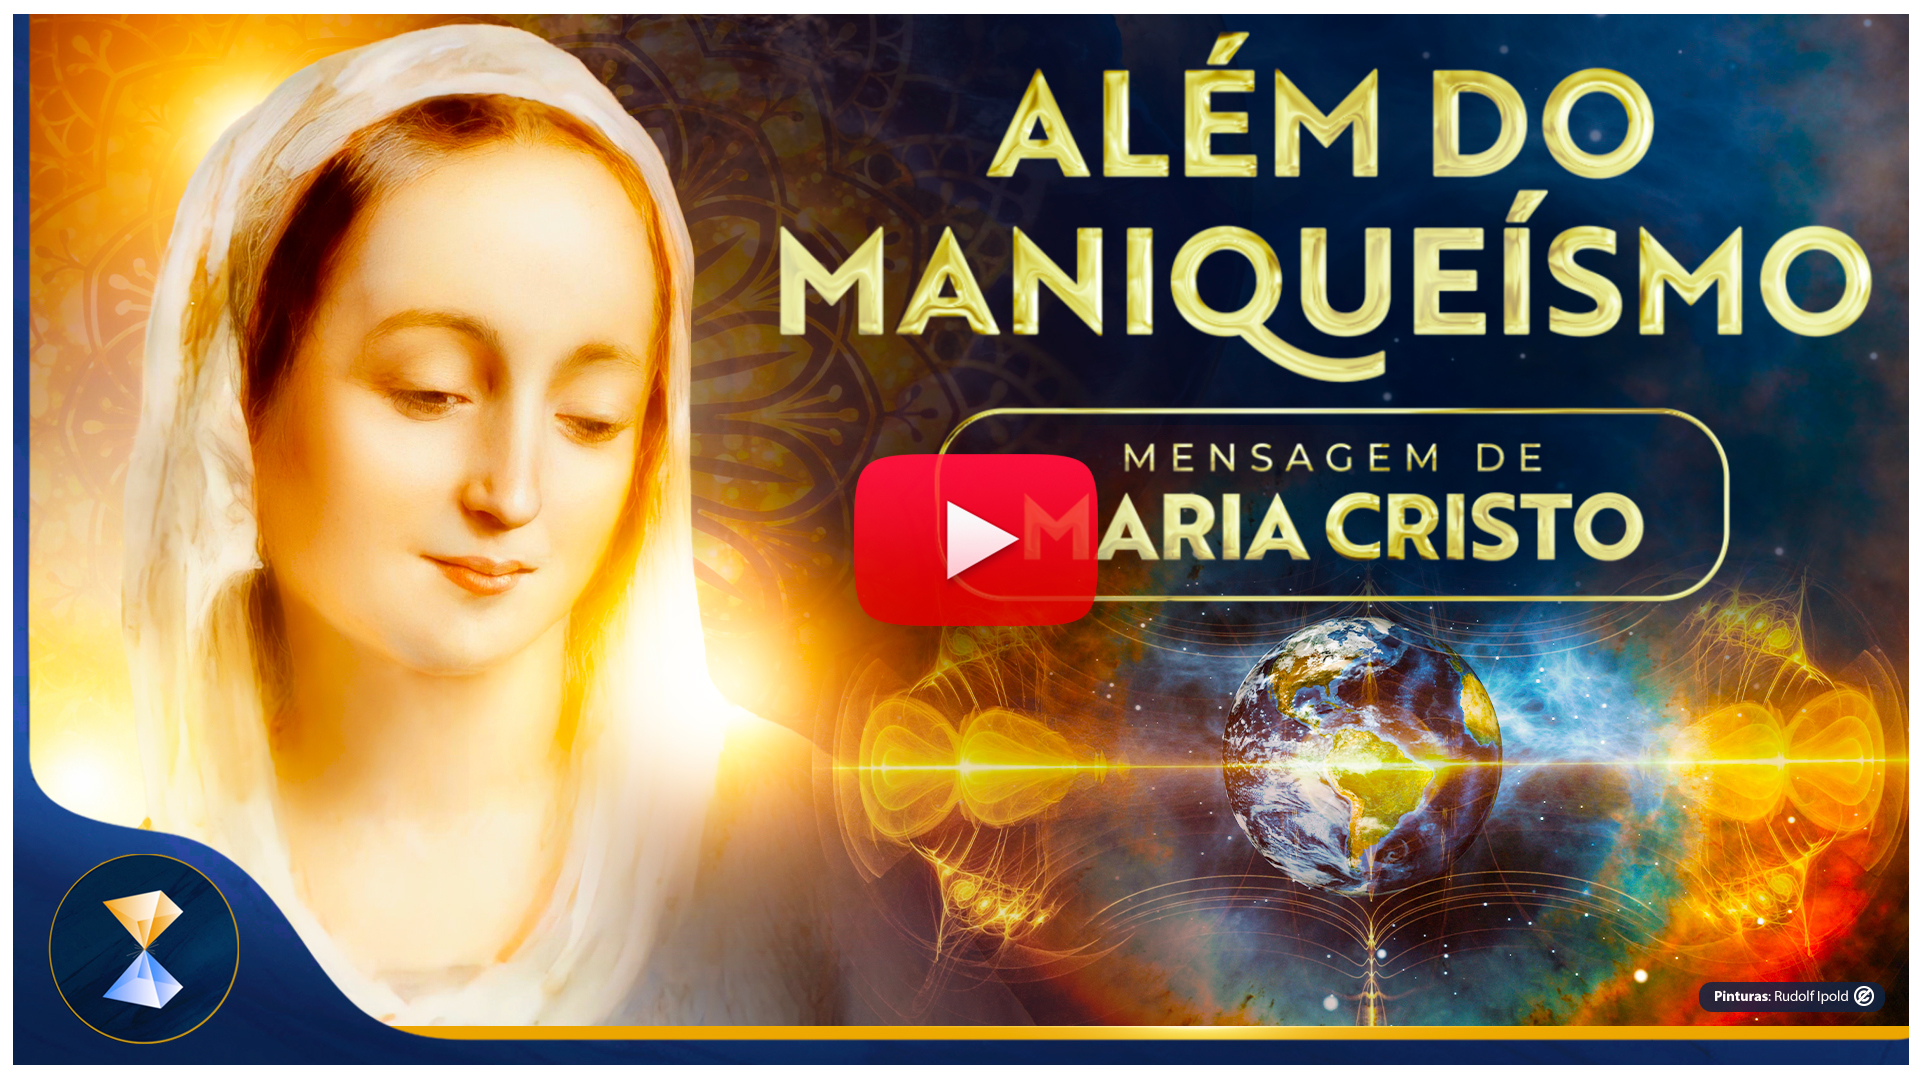 Além do maniqueísmo – Mensagem de Maria Cristo 